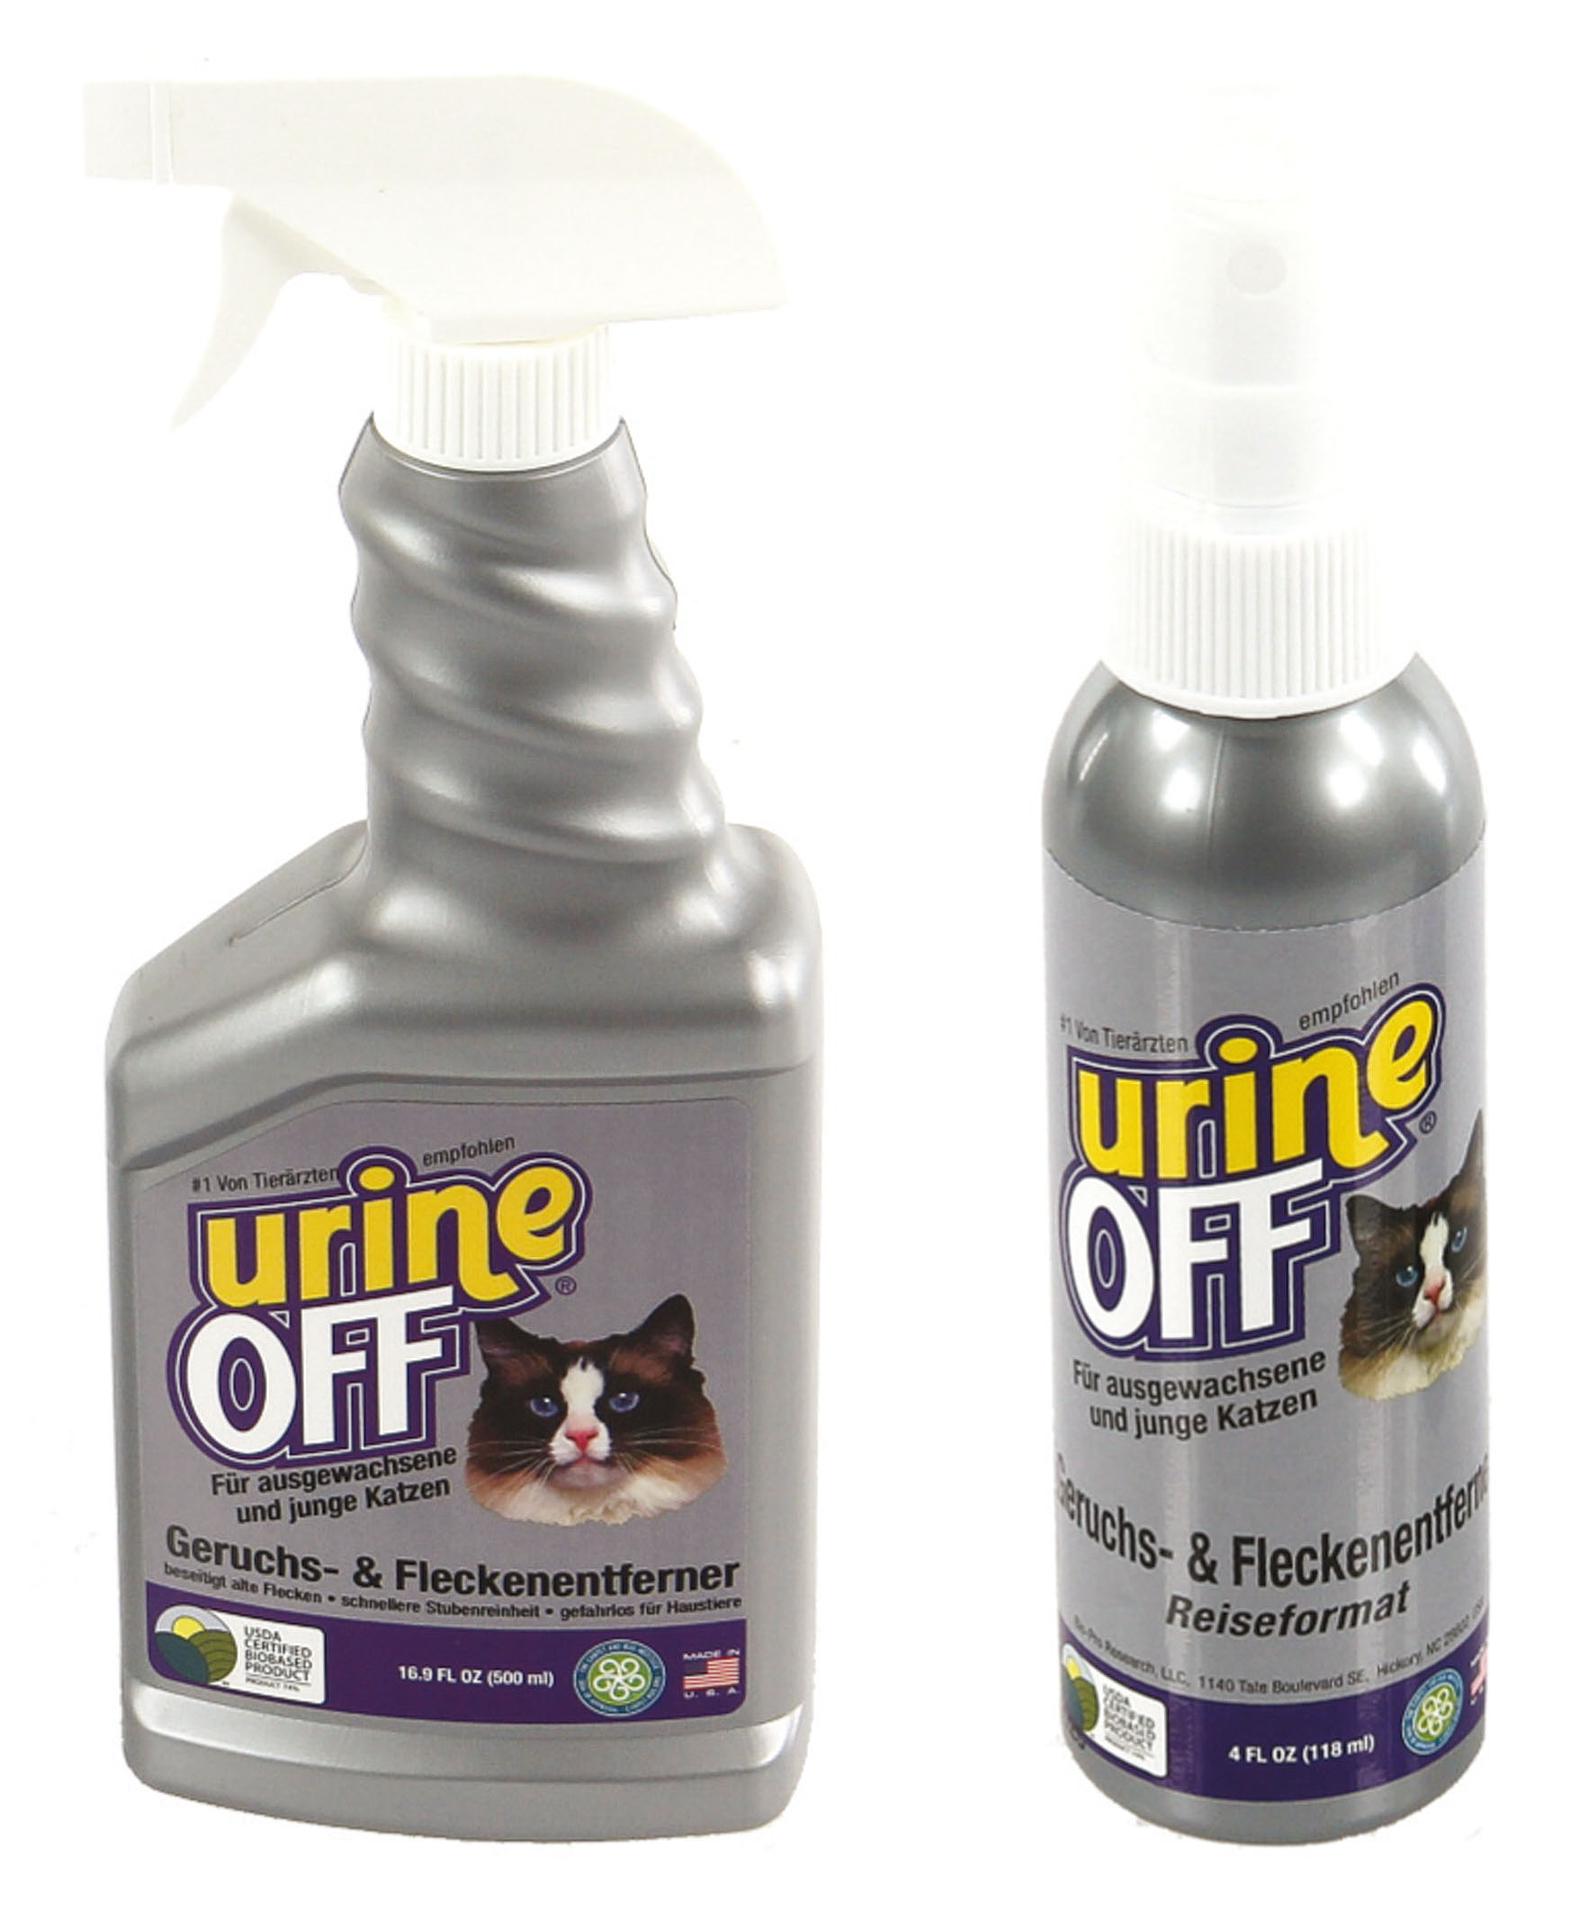 Urine OFF cat, détachant et désodorisant